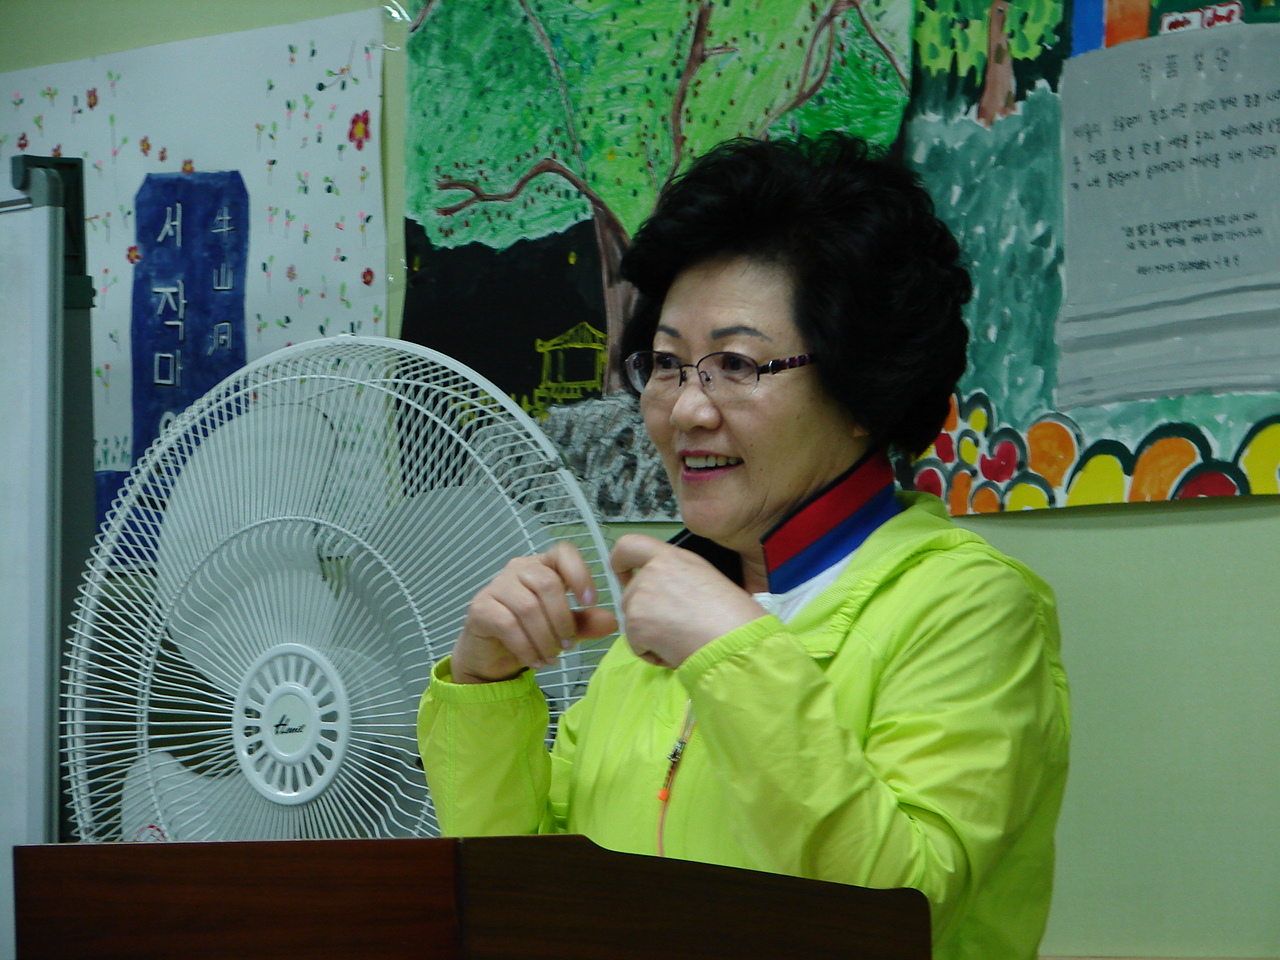 우산동 복지네트워크 위원장을 맡고 계시다는 사진 속 어머니는 아주 소소한 것들을 너무도 행복하게 자랑하셨다.